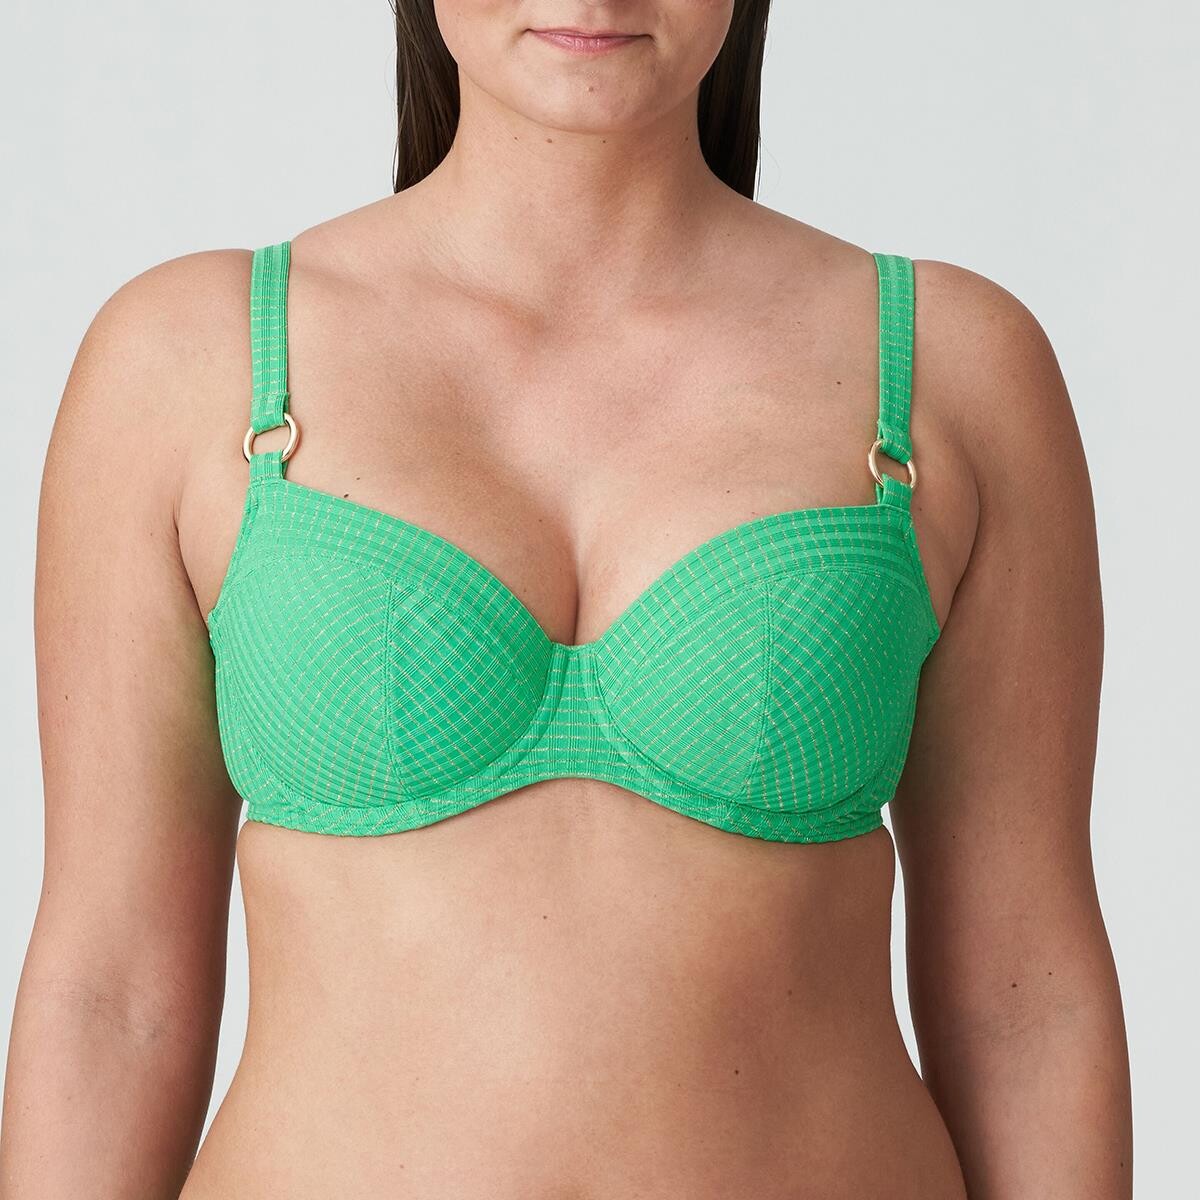 Primadonna Maringa Bikini Top Lug, Farve: Lush Grøn, Størrelse: 70G, Dame